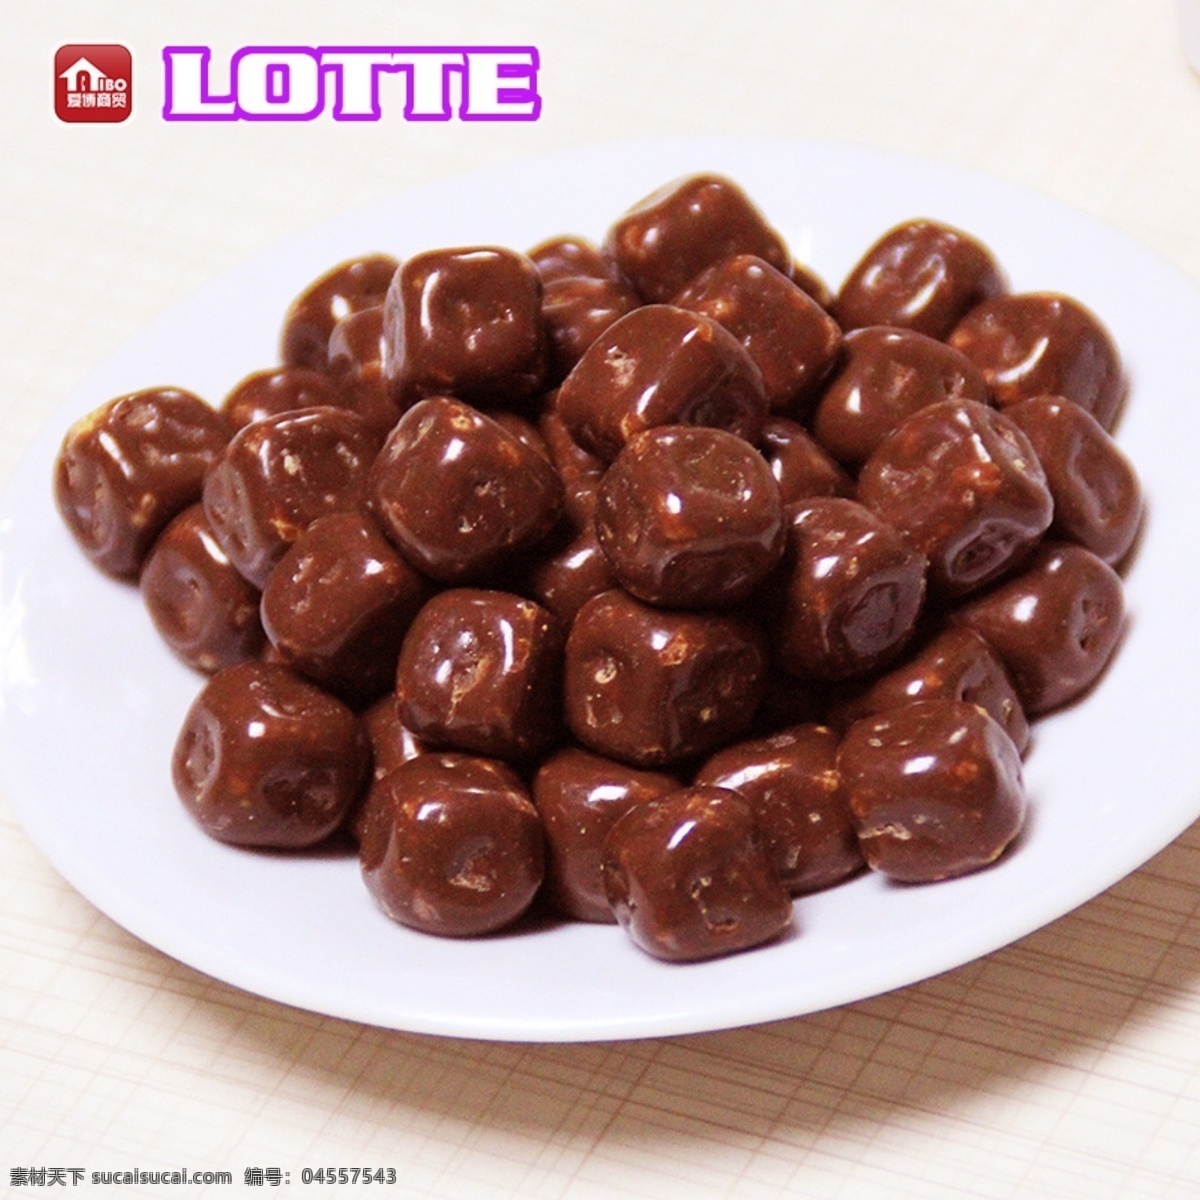 韩国 乐天 伦 脆 米 巧克力 球 76g 可伦 脆米 巧克力球 76g瓶 巧克力豆 糖果 甜品 食品 生活百科 餐饮美食